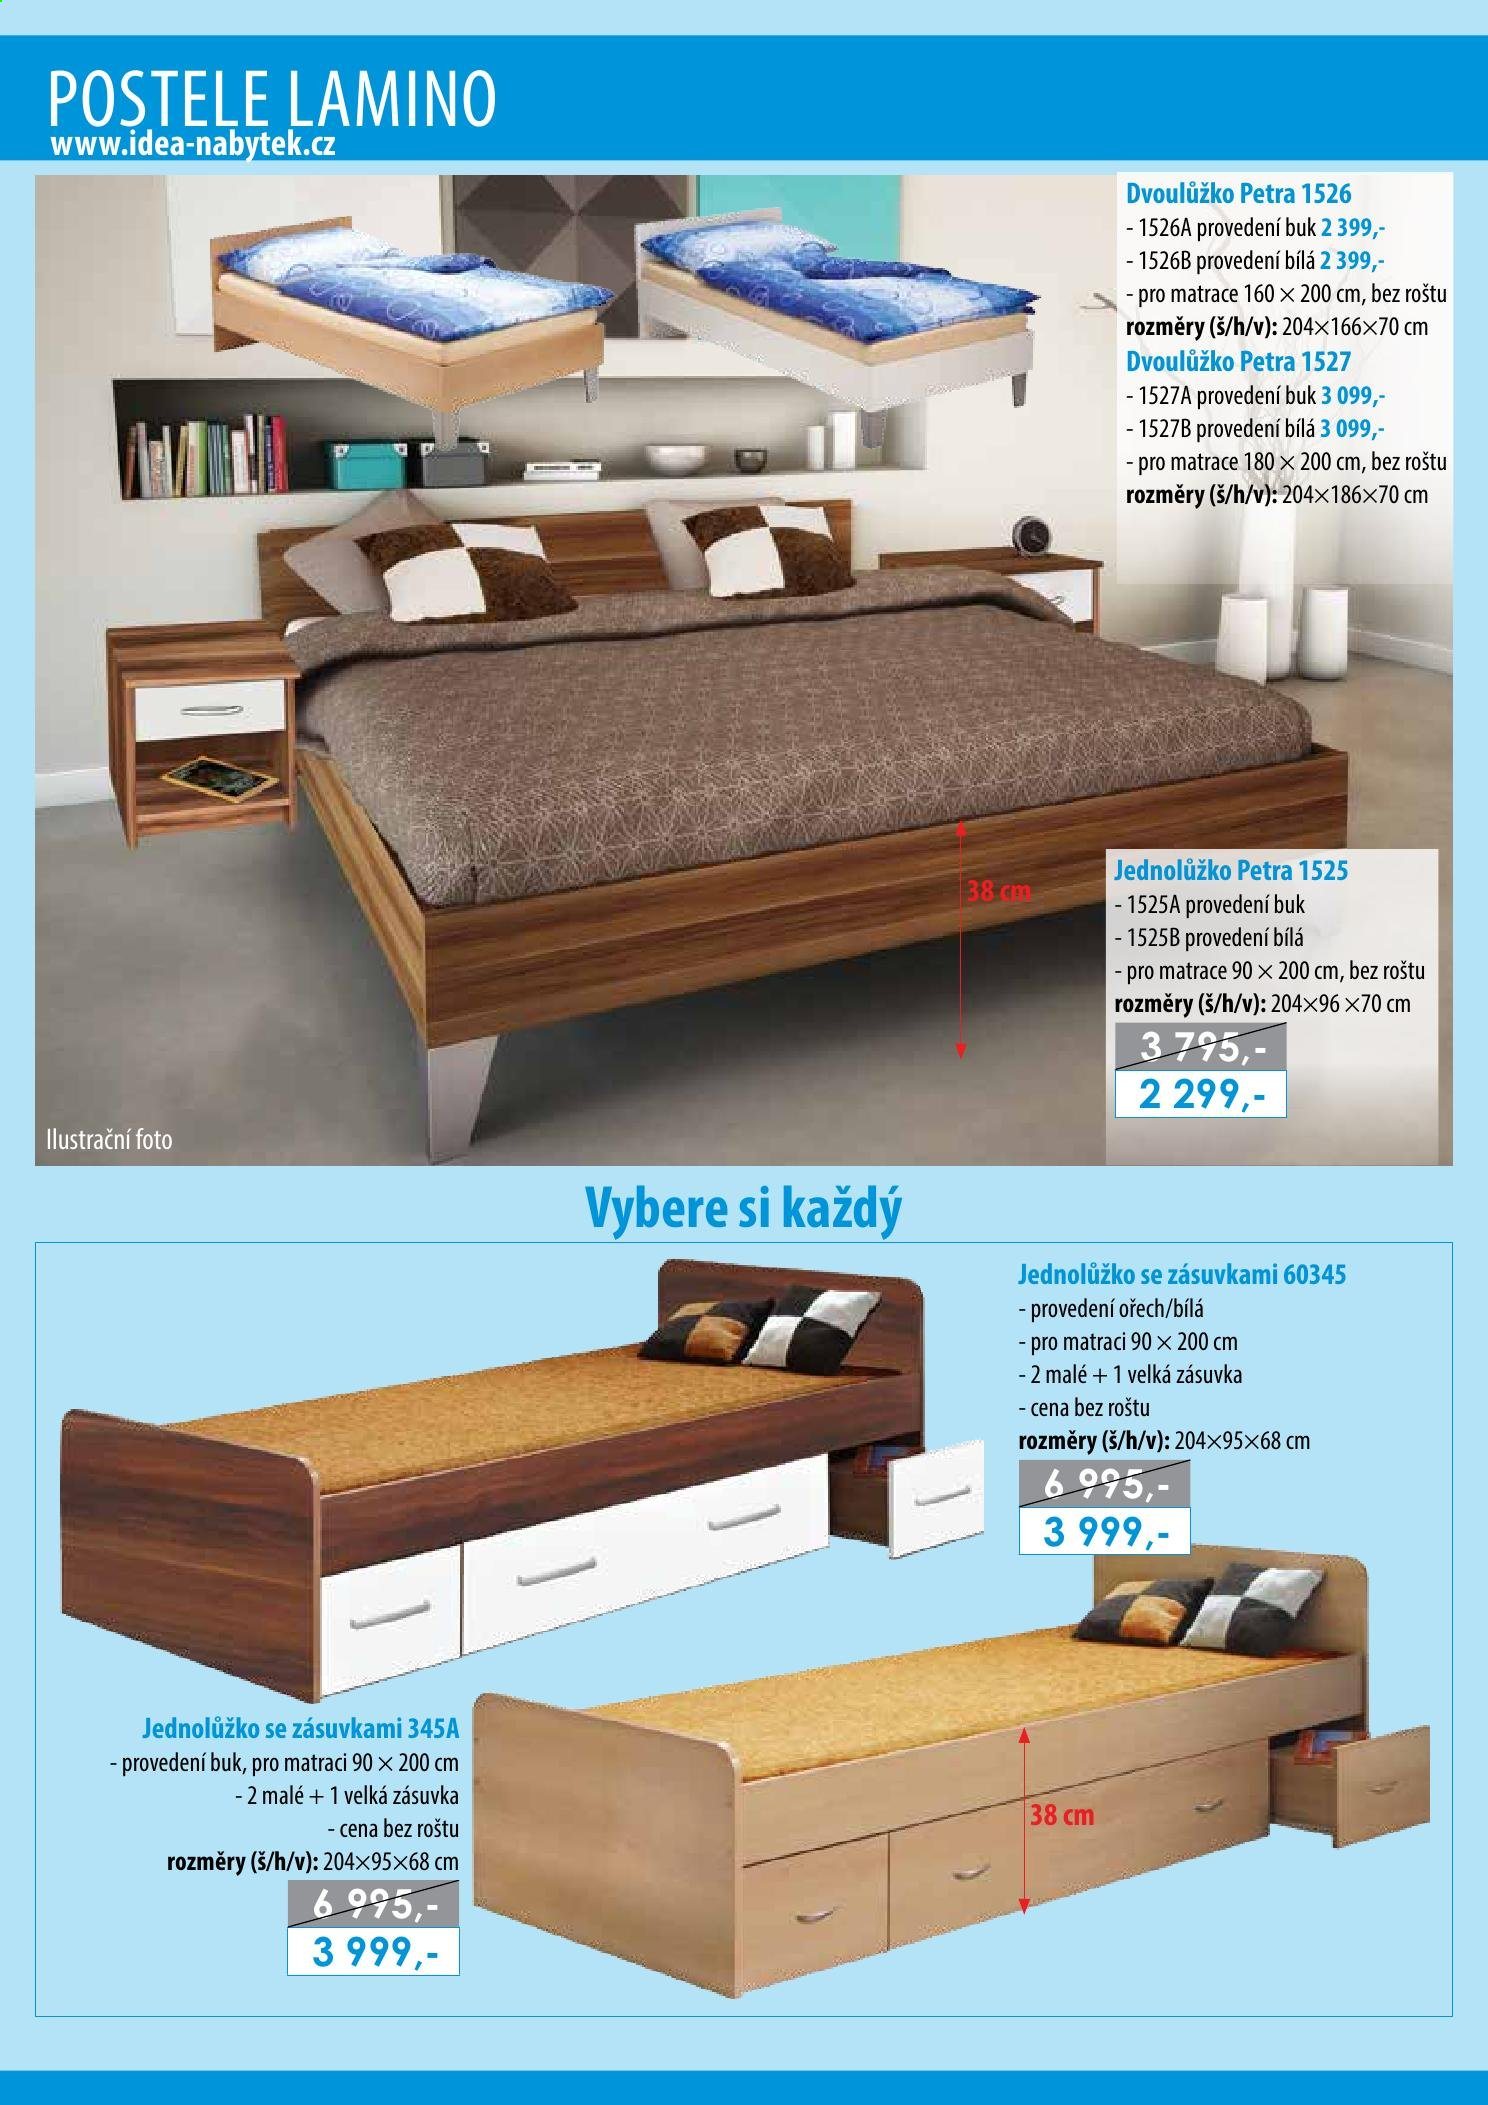 Leták IDEA nábytek - Produkty v akci - dvoulůžko, postel. Strana 12.